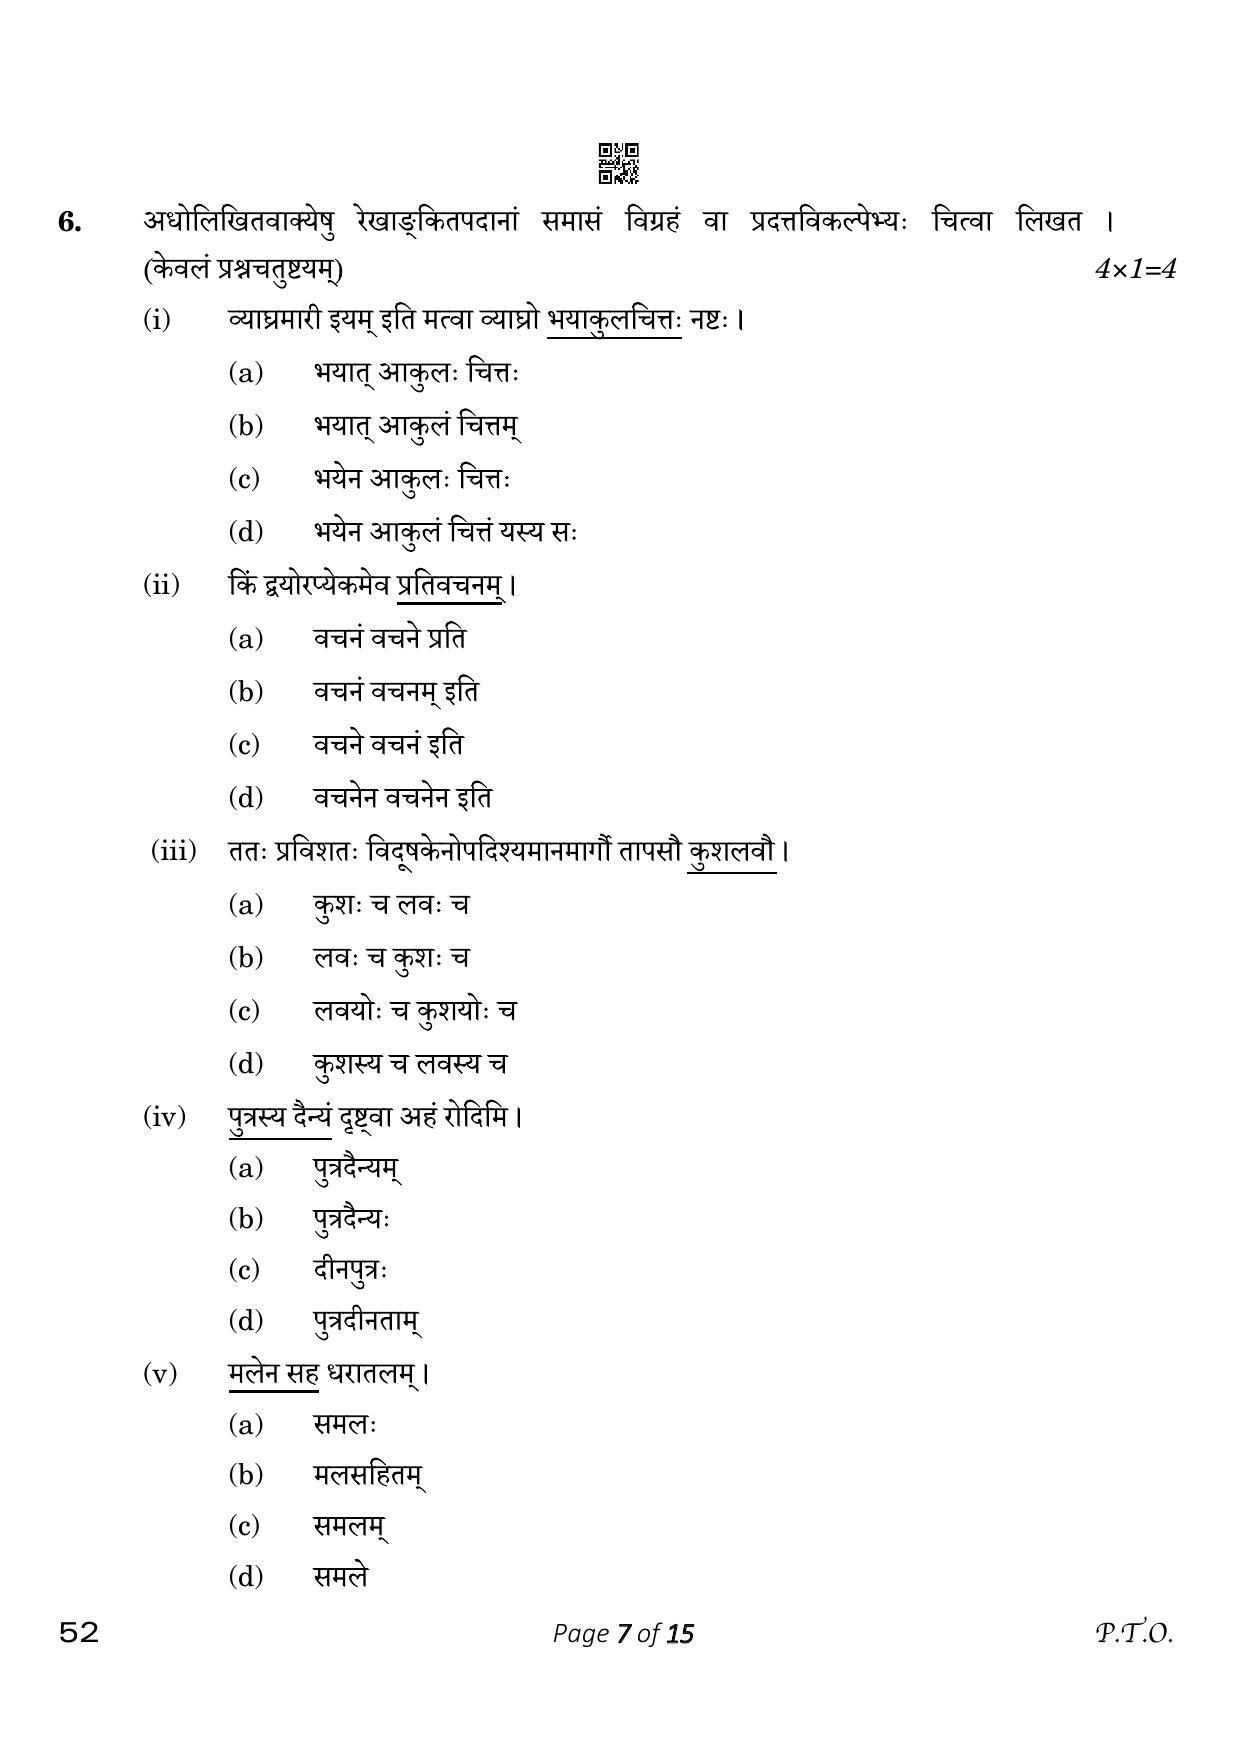 CBSE Class 10 Sanskrit (Compartment) 2023 Question Paper - Page 7